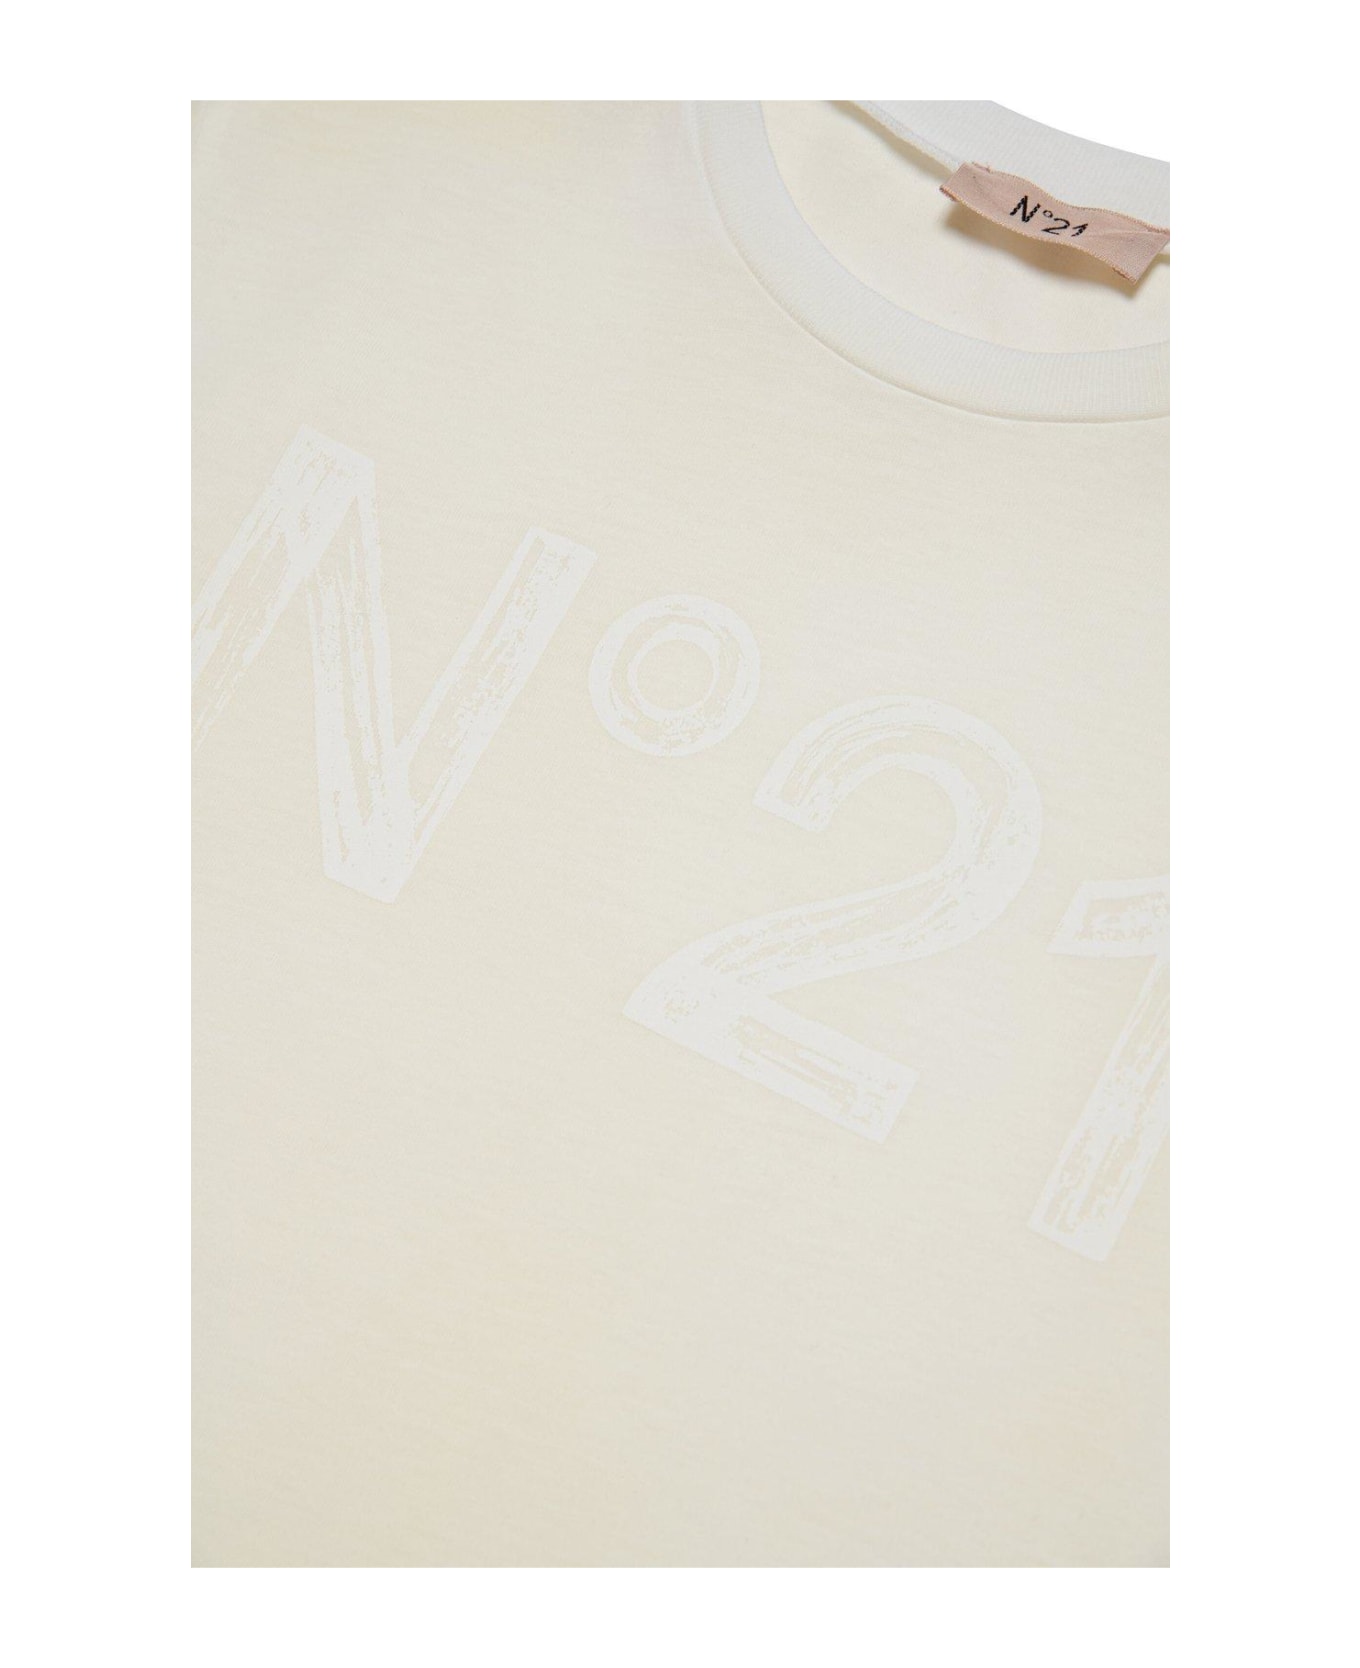 N.21 Logo Printed Crewneck T-shirt - Panna